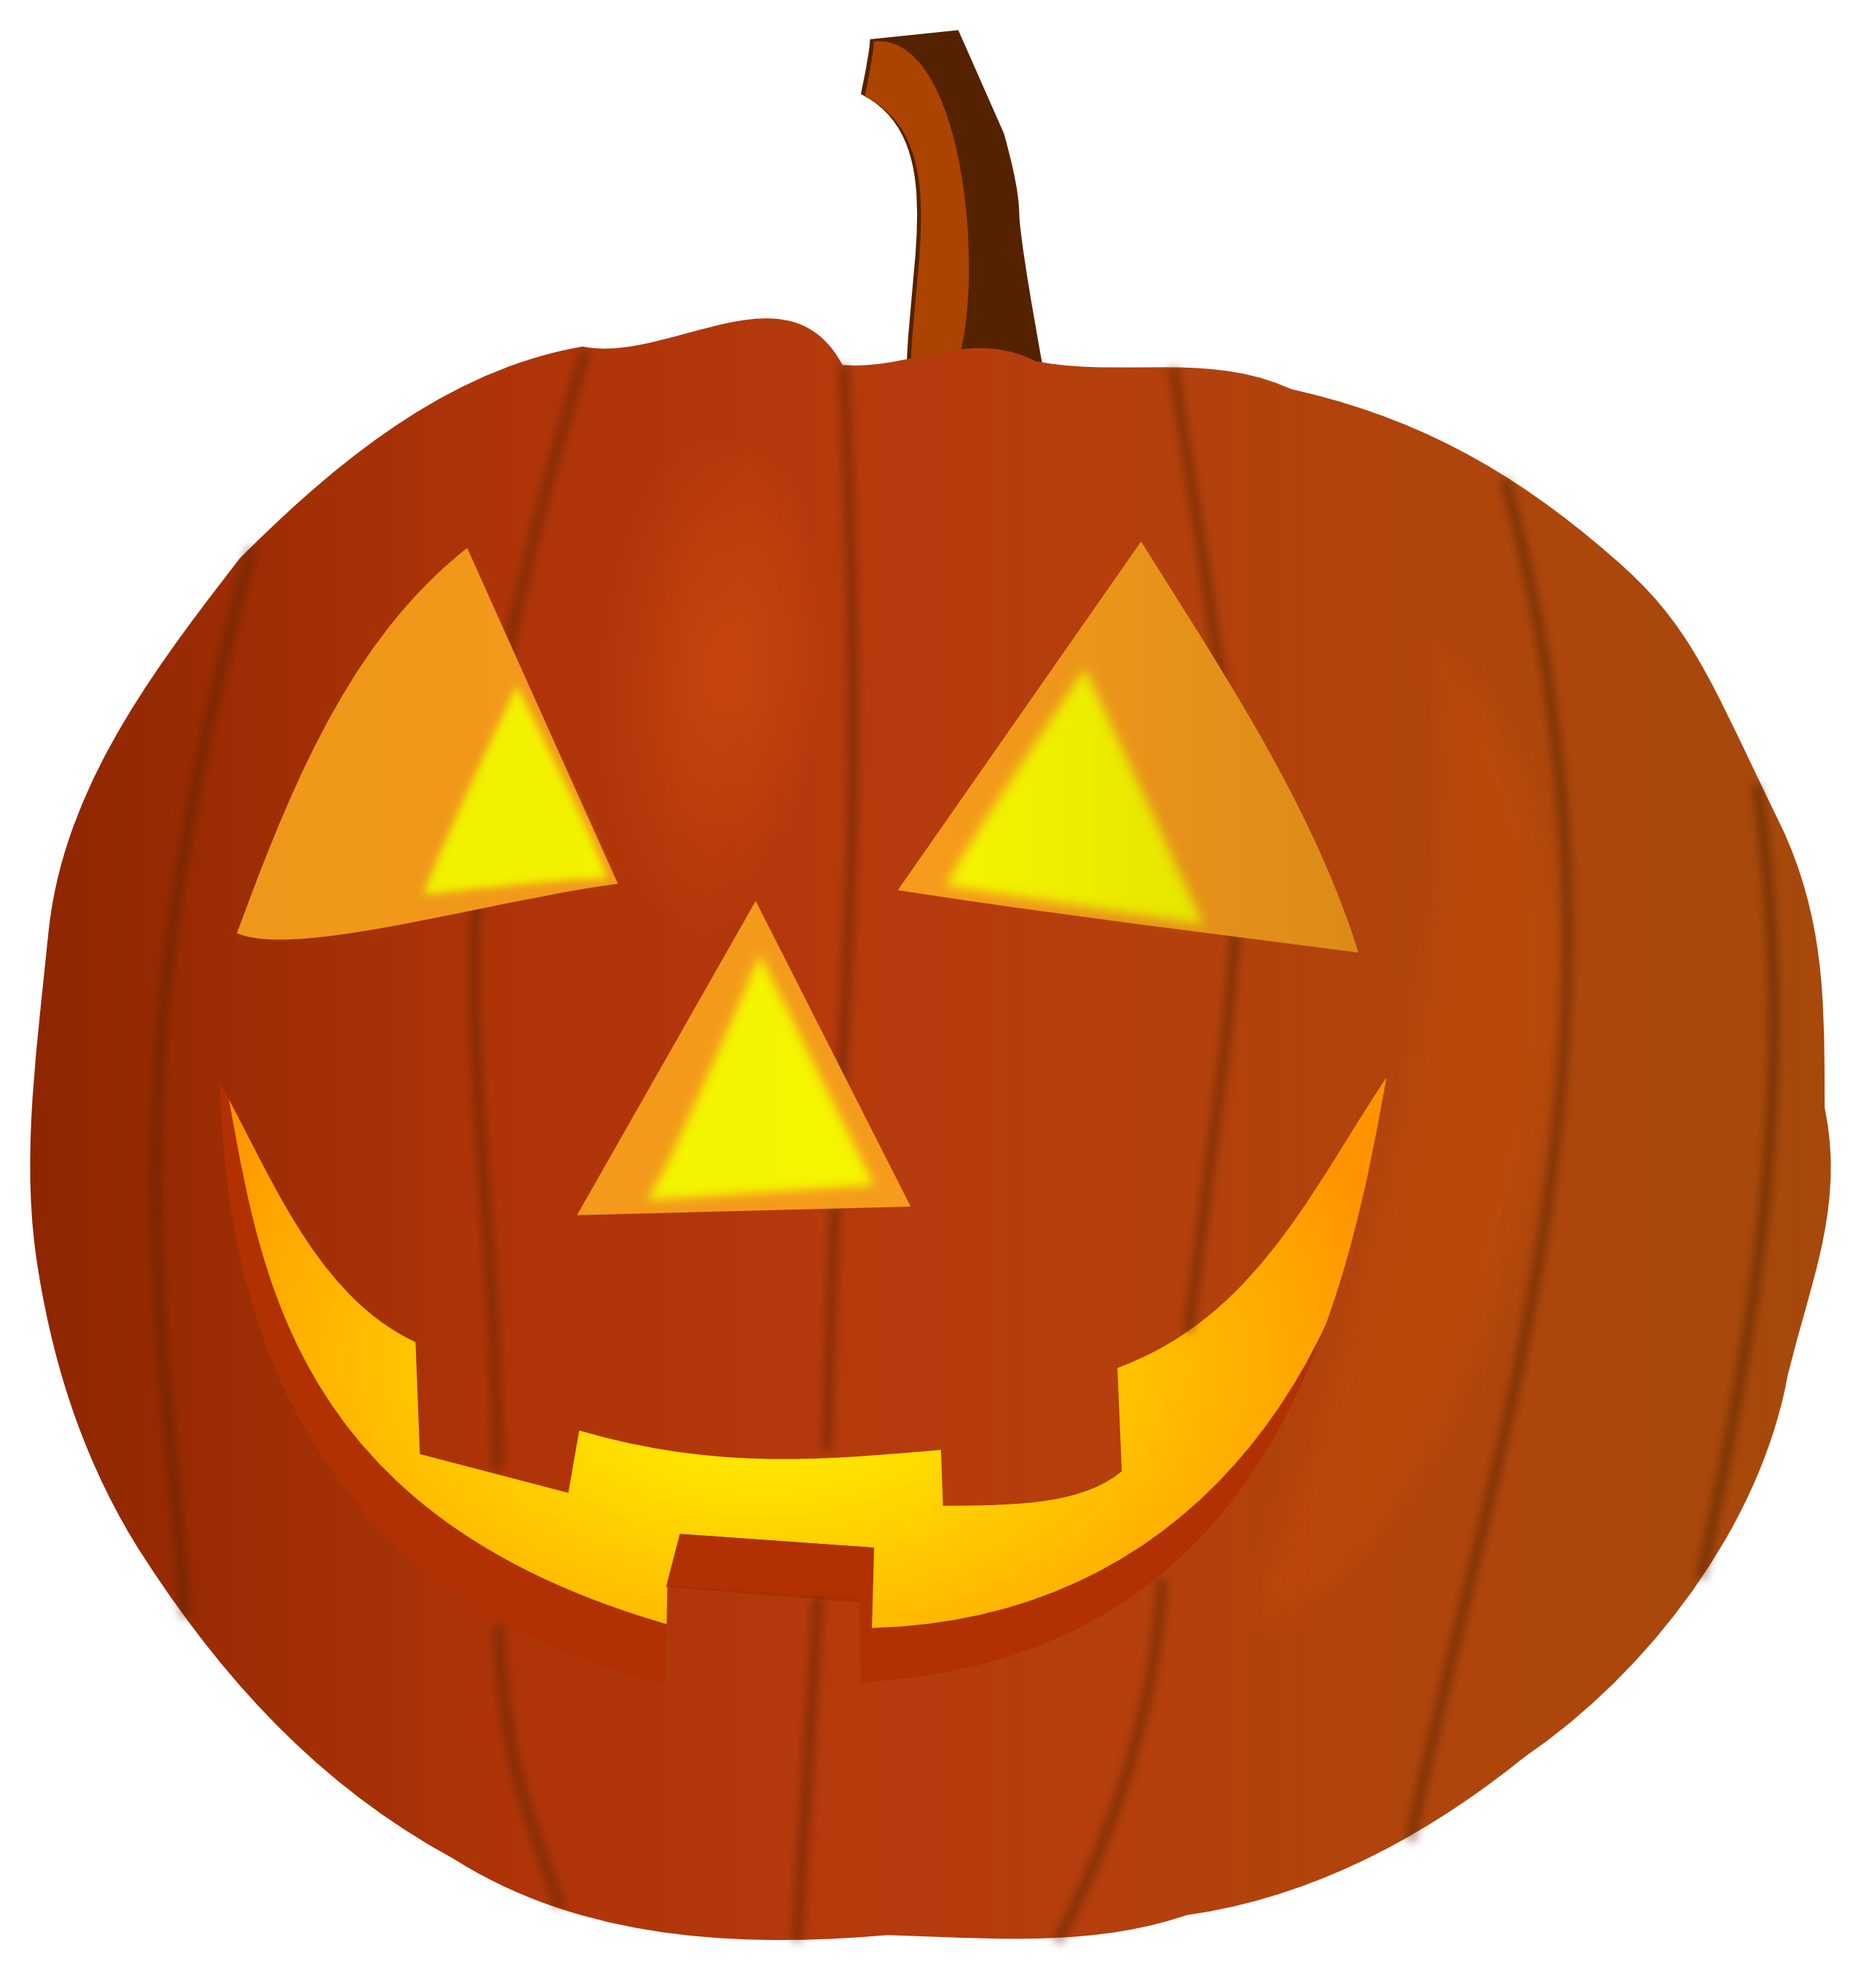 Halloween Cartoon Pumpkins - ClipArt Best